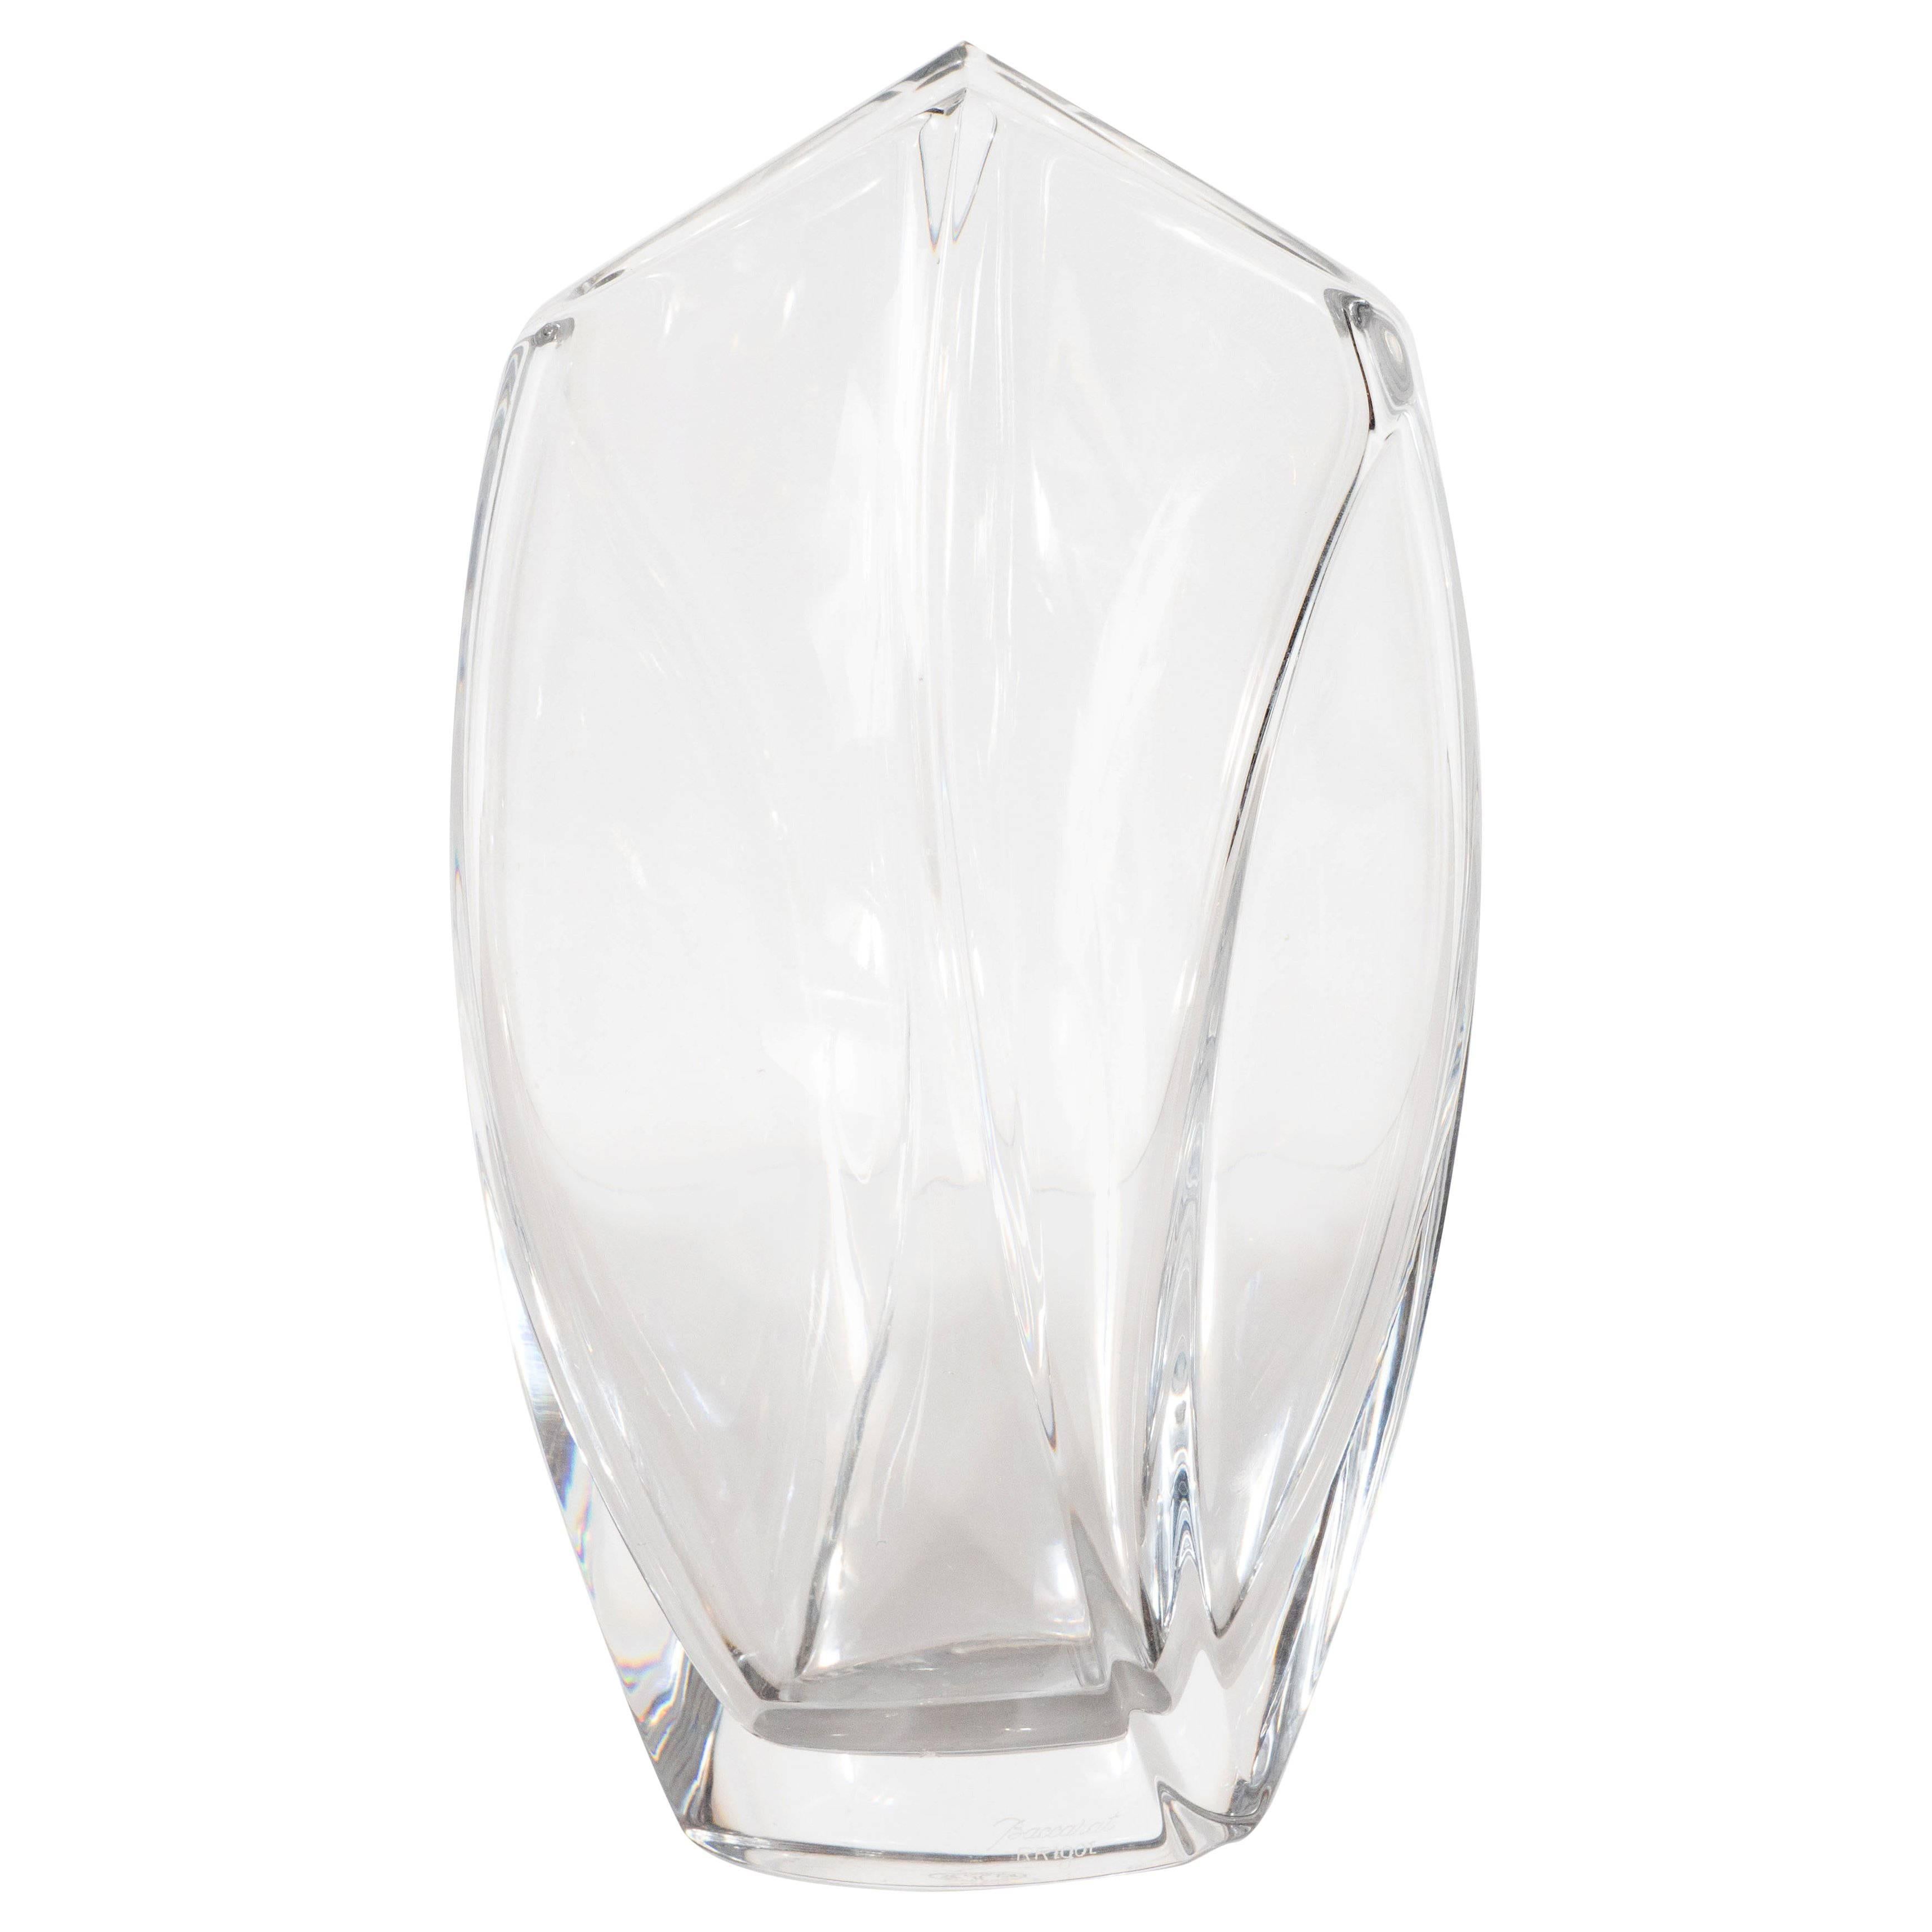 Modernist Sculptural Translucent Crystal Vase by Robert Rigot for Baccarat